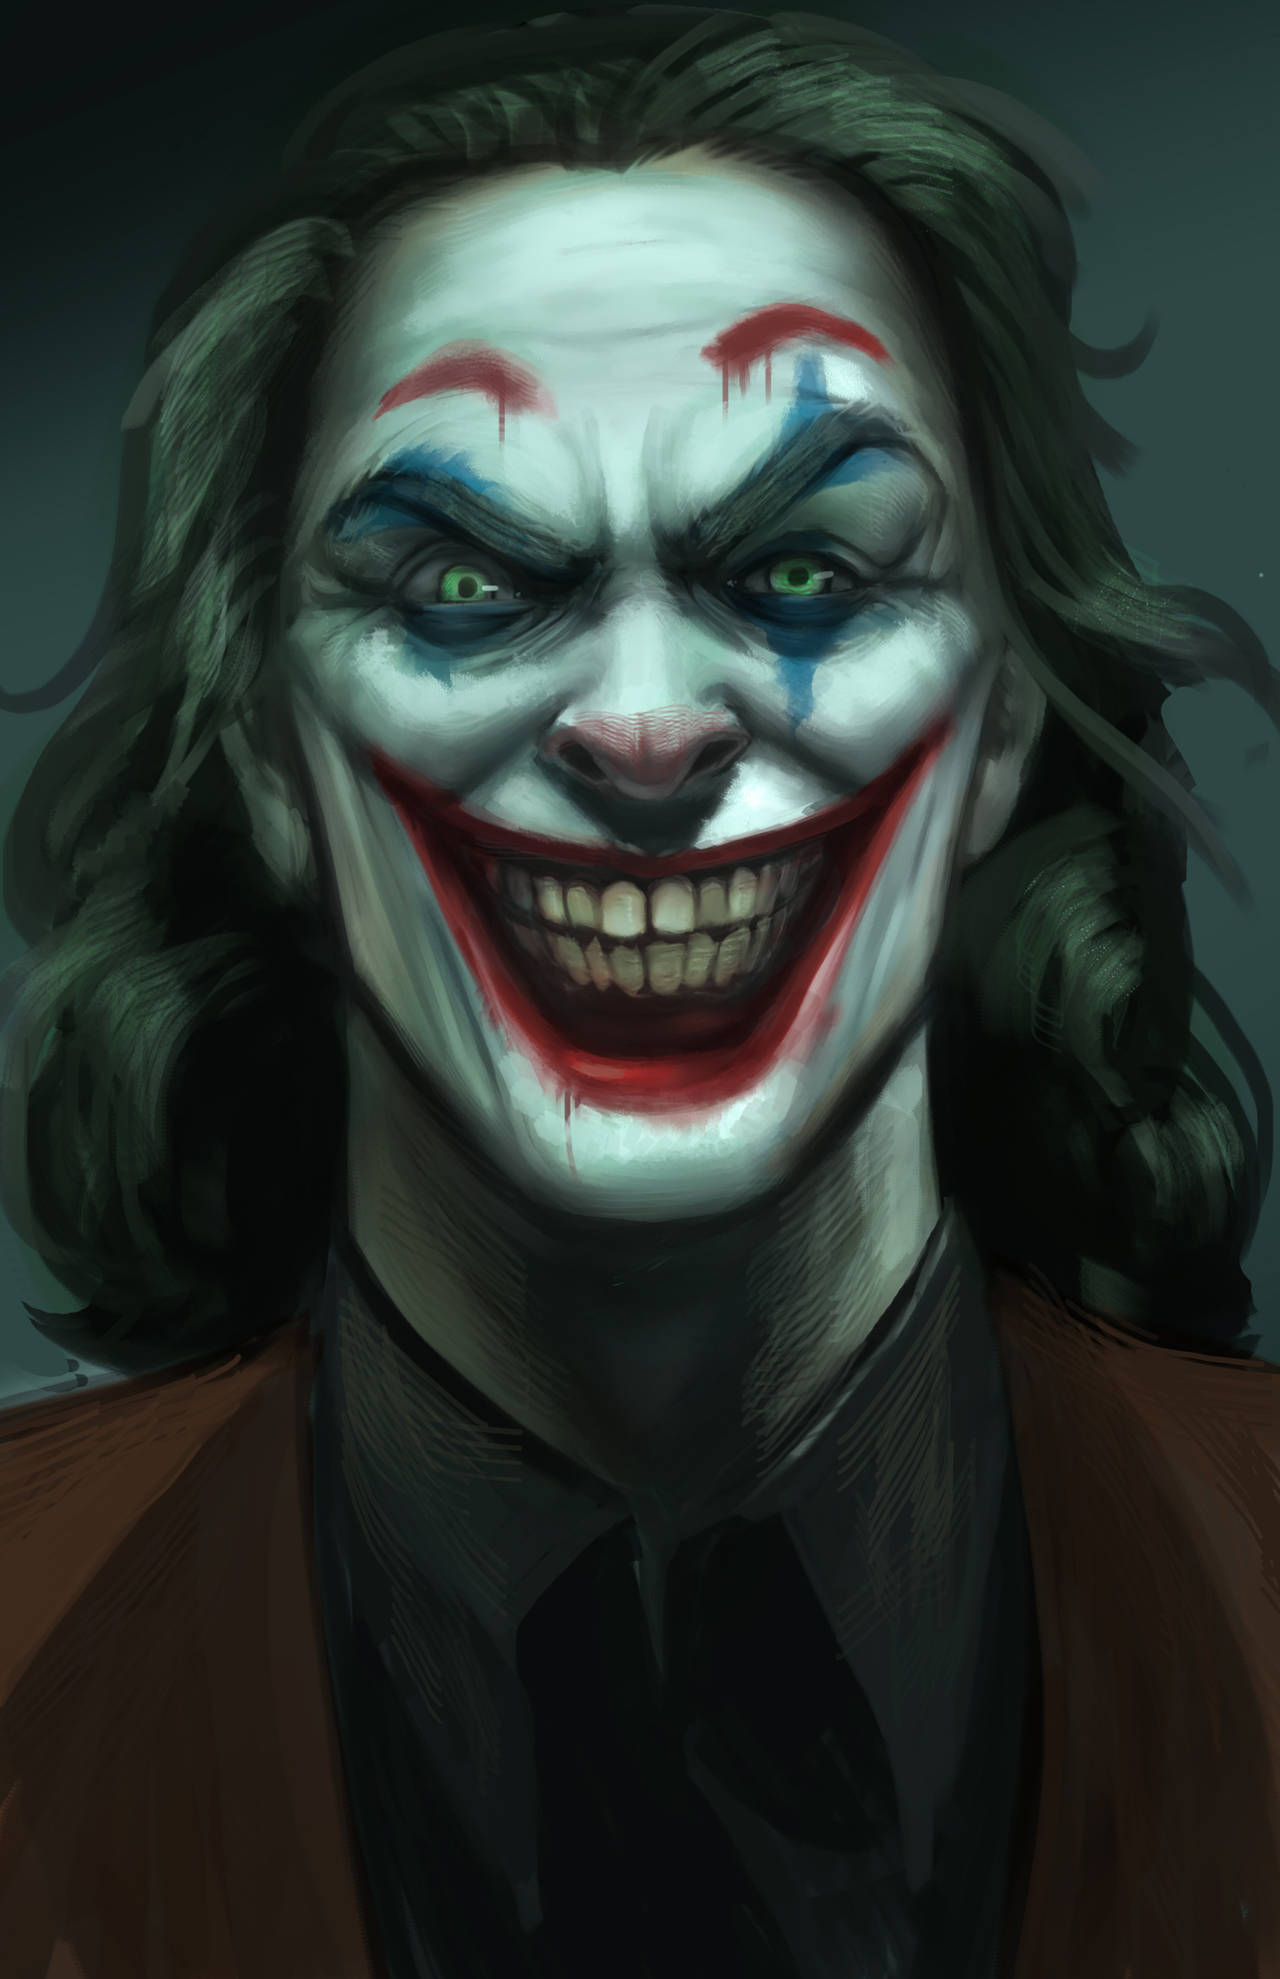 Joker fanart by victter-le-fou on DeviantArt